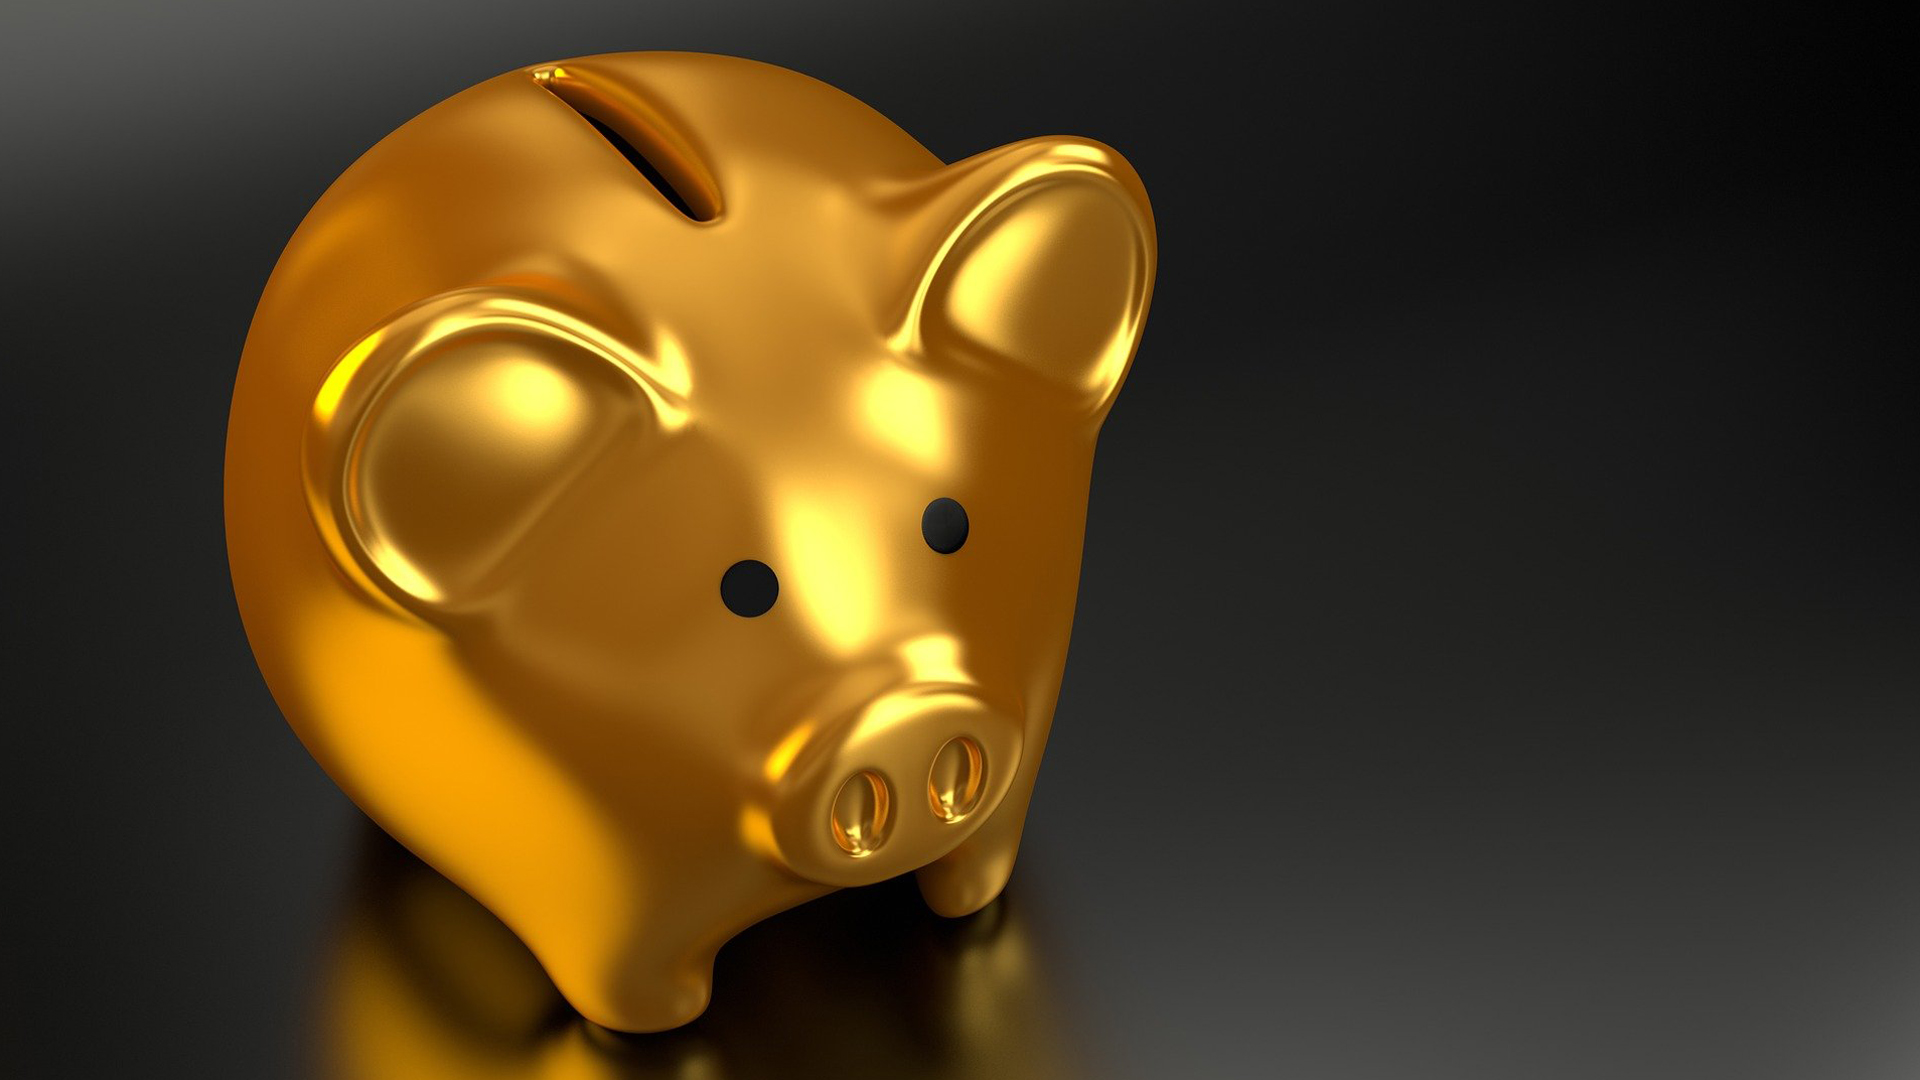 A golden piggy bank